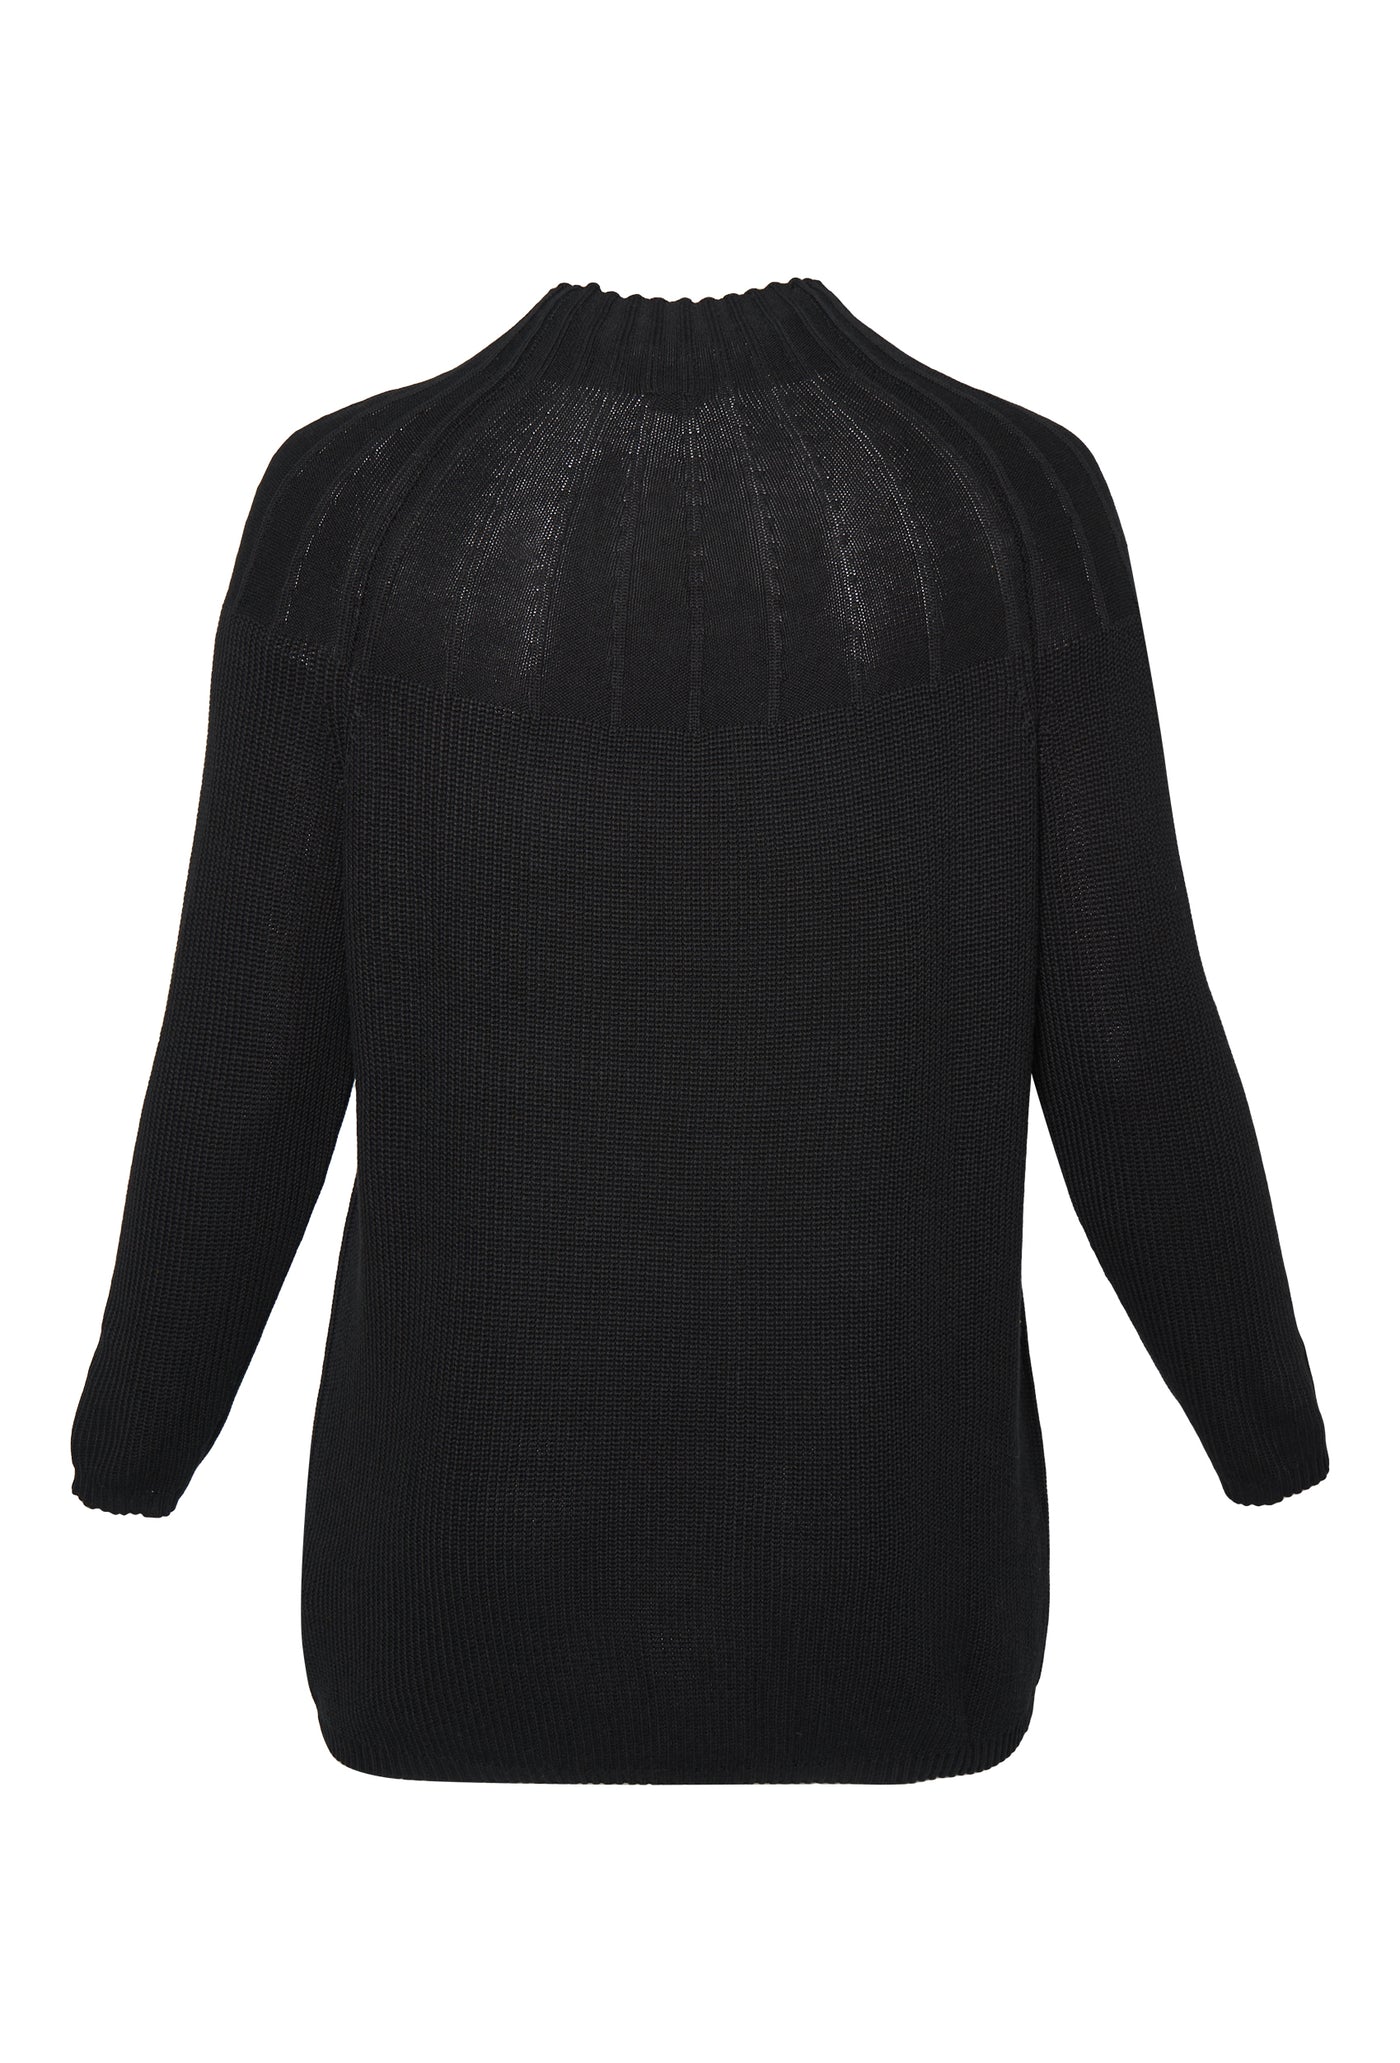 Adia ADMaura Knit Pullover 9998 Black